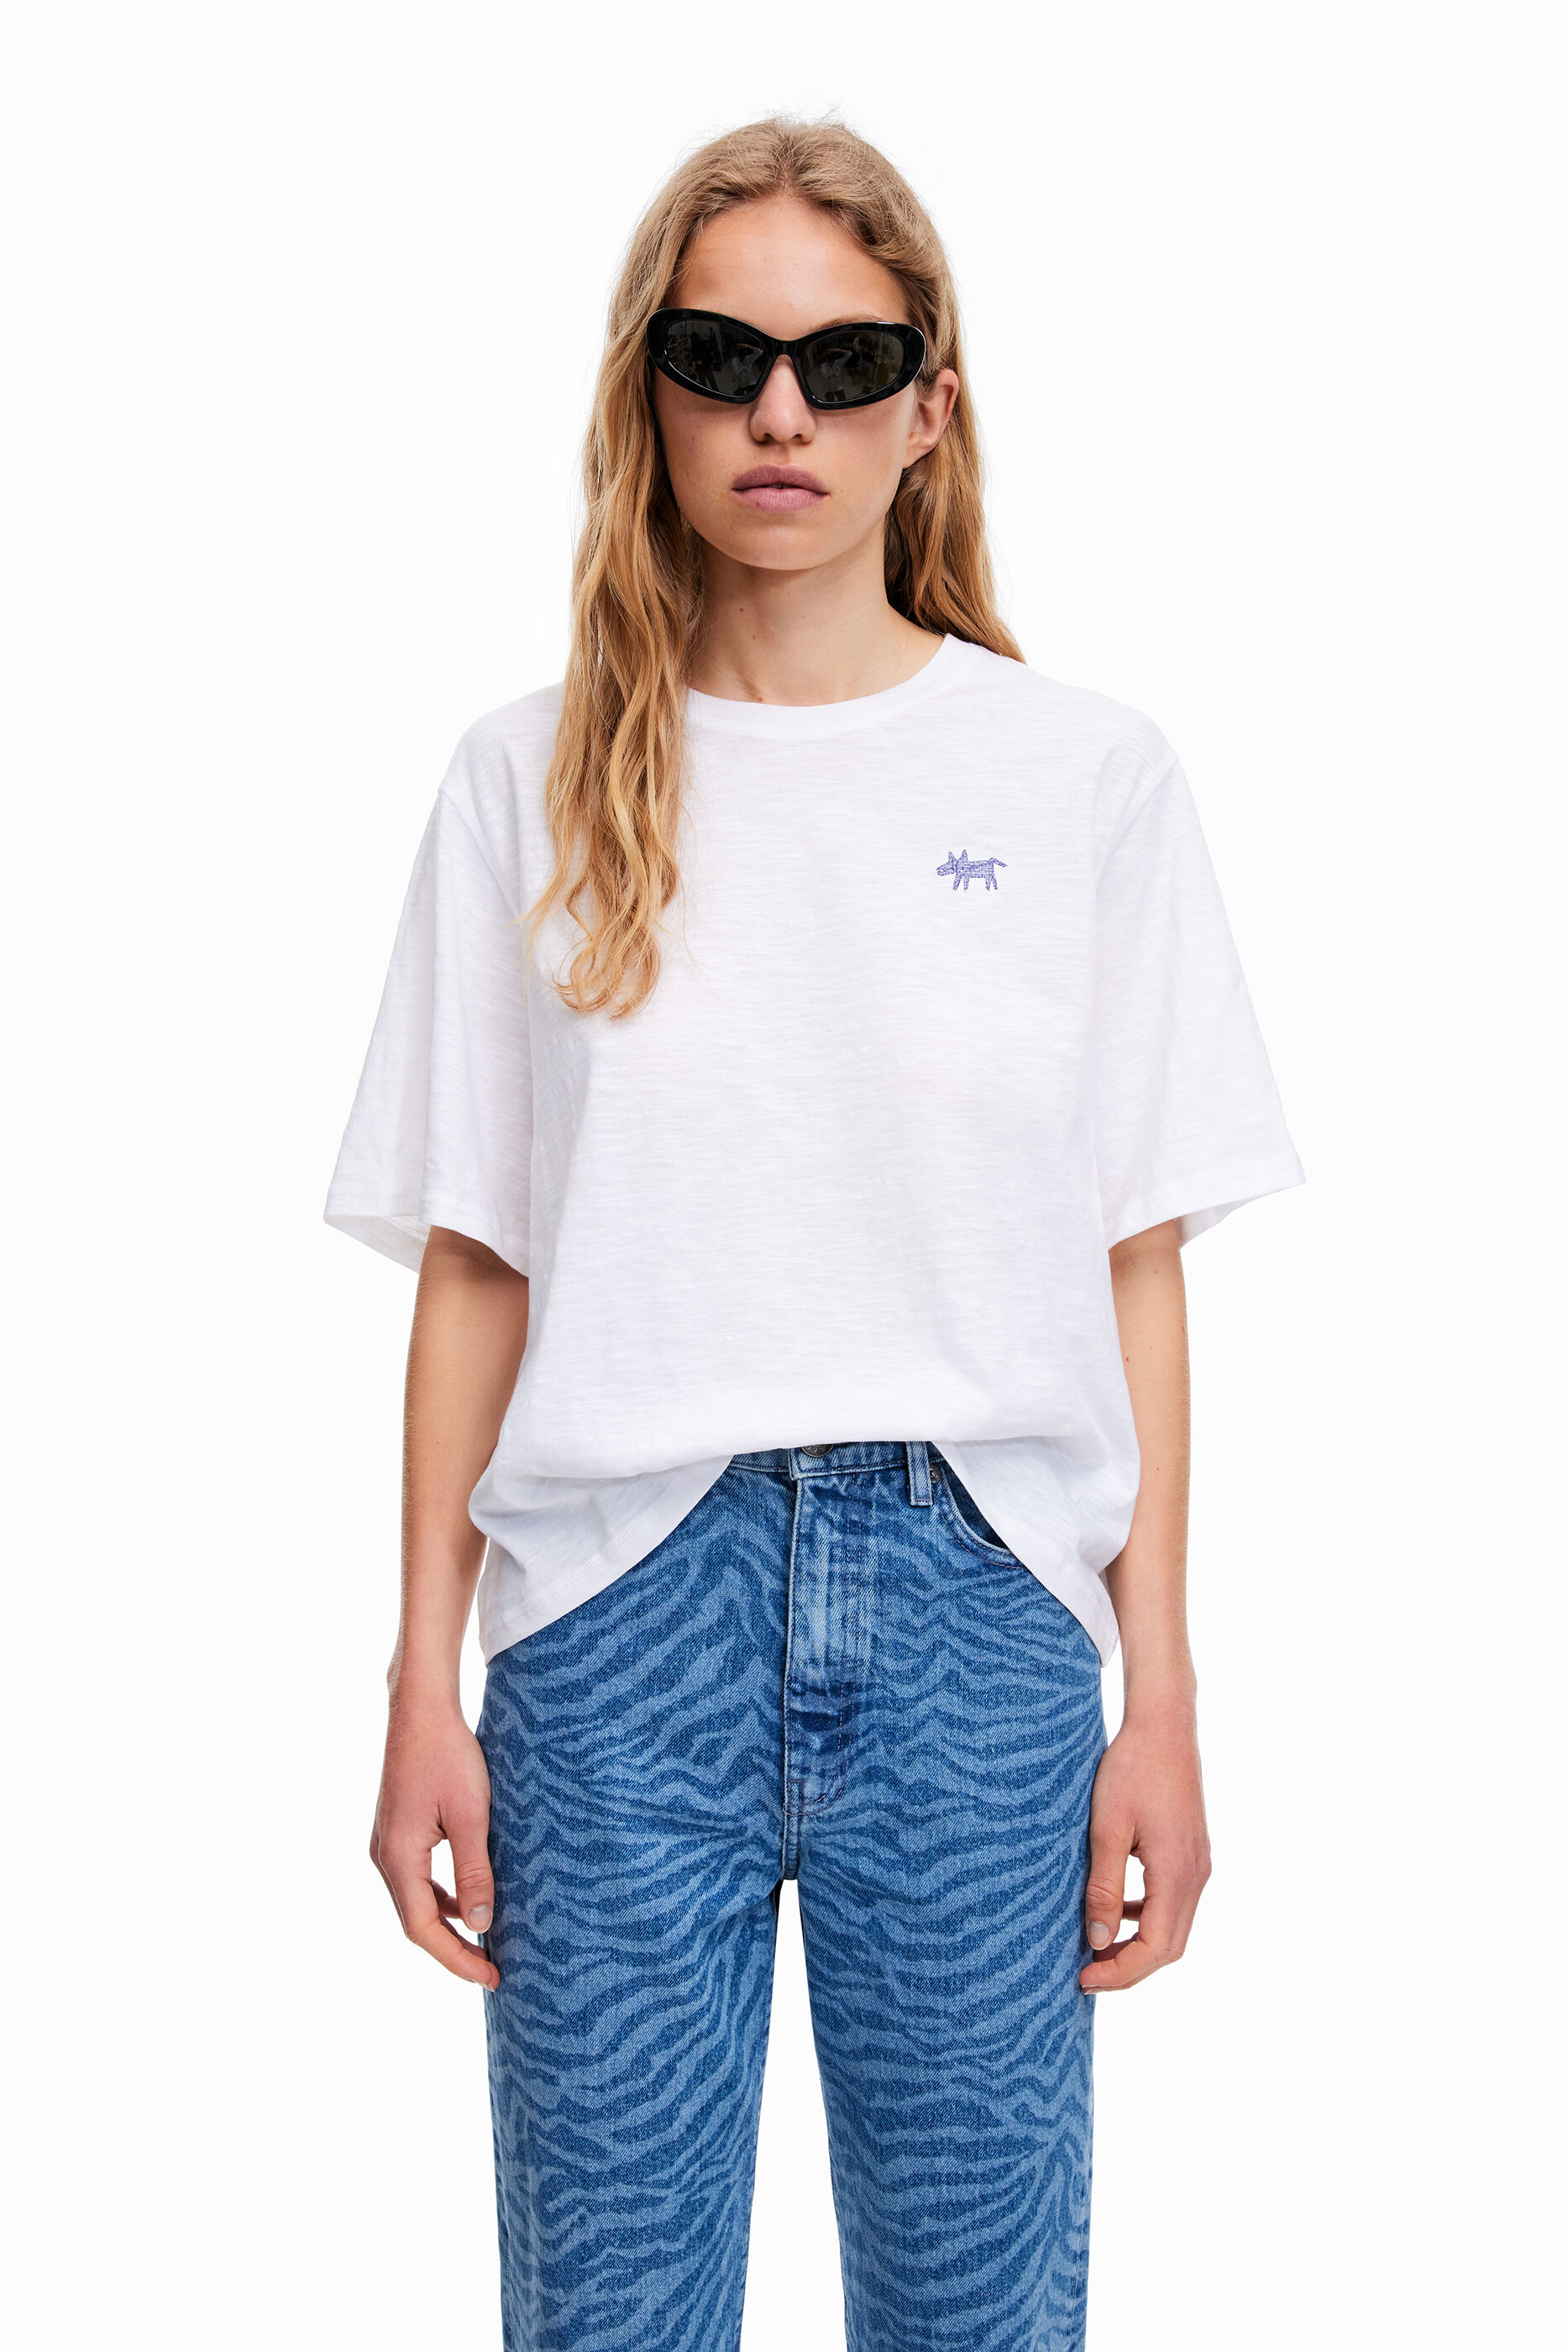 DAMEN Hemden & T-Shirts Basisch Bimba&Lola T-Shirt Rabatt 80 % Weiß/Grau S 